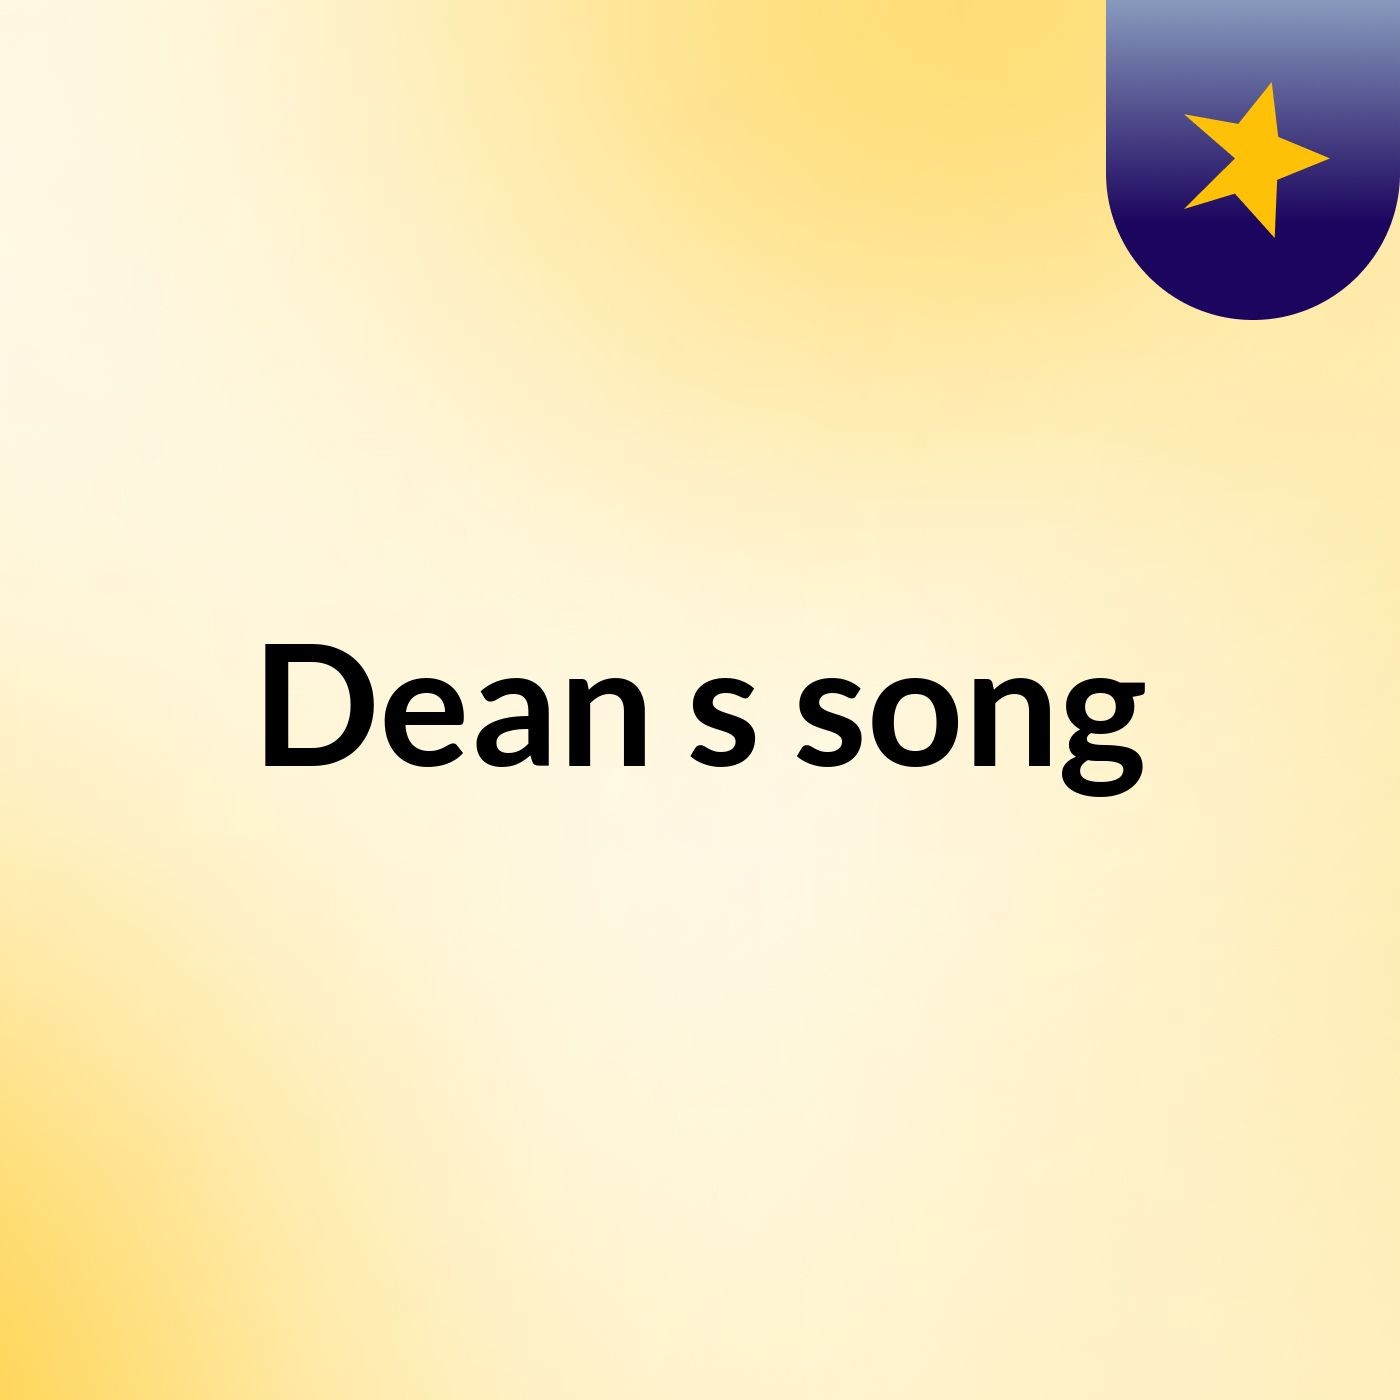 Dean's song